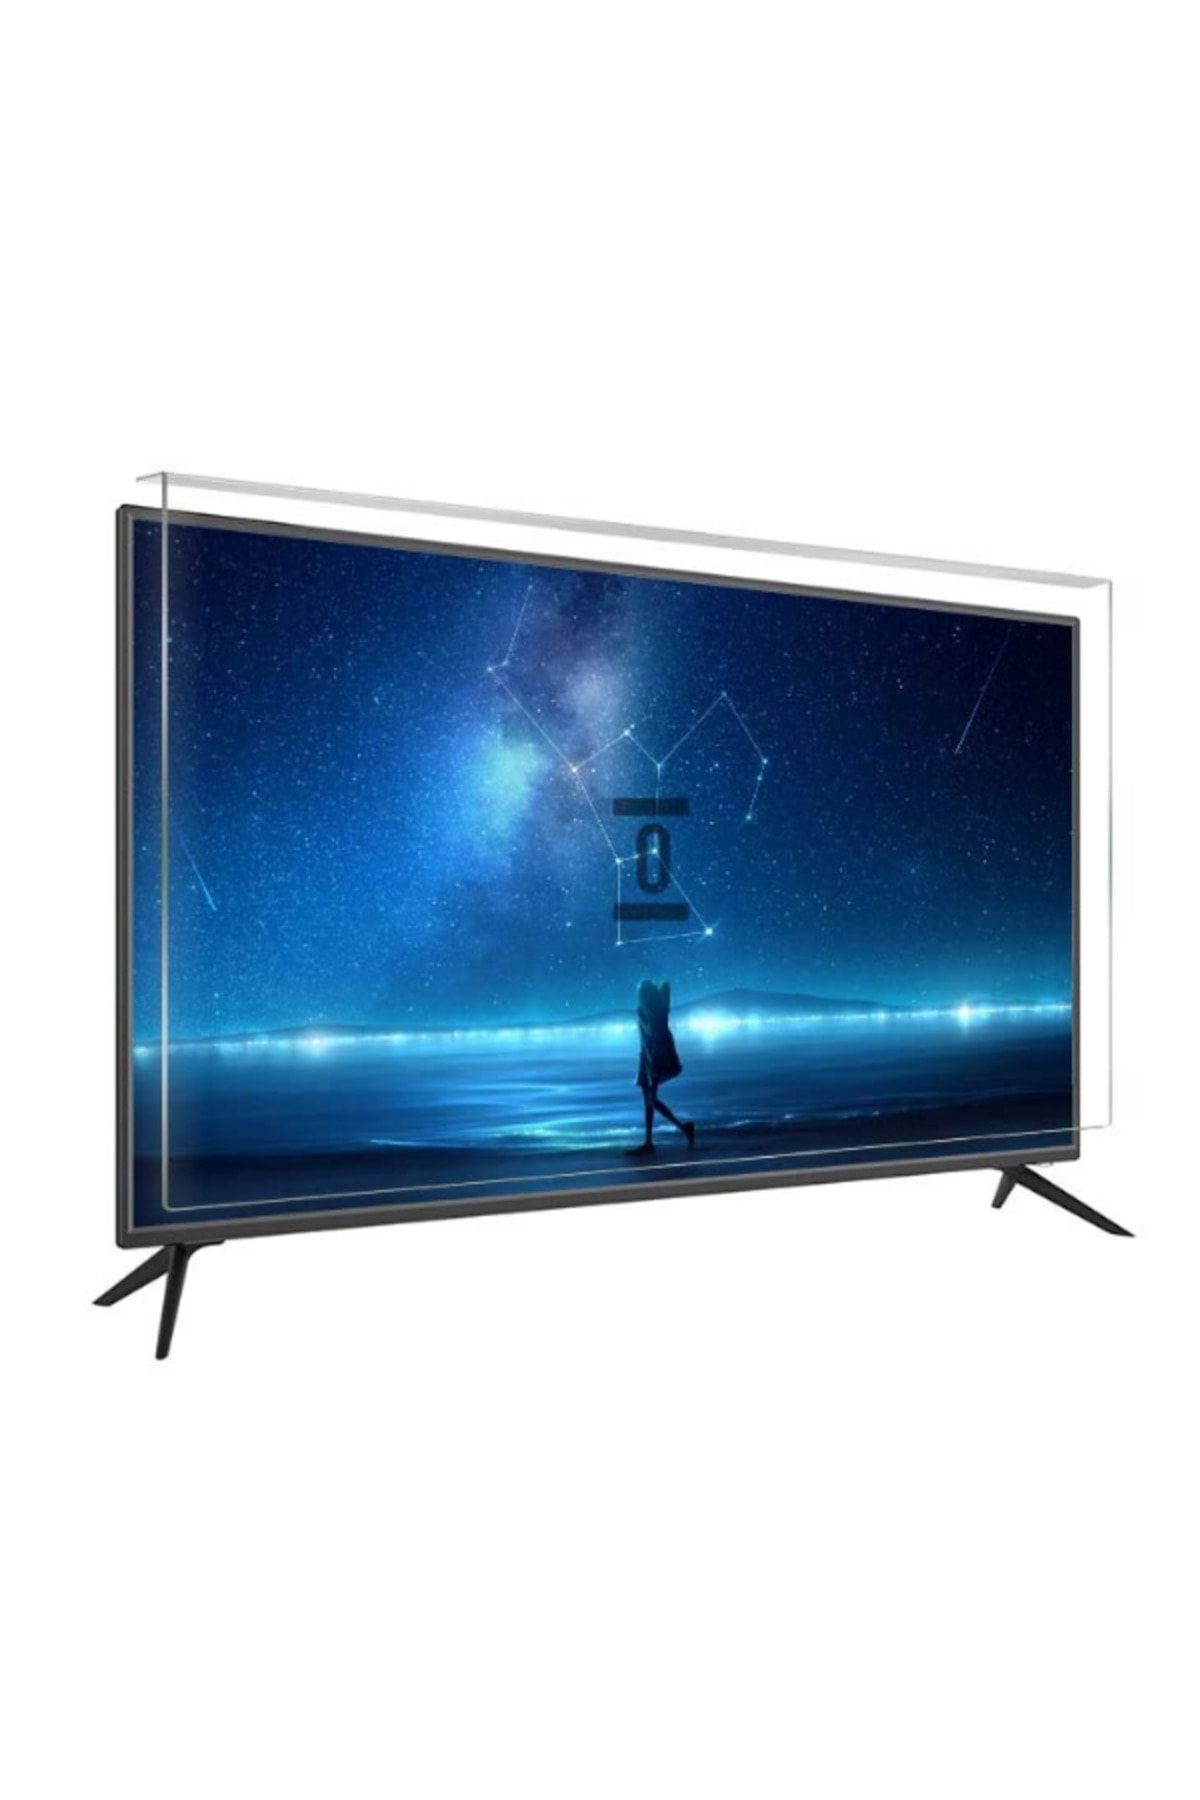 BESTOCLASS Regal 55R7560UA Tv Ekran Koruyucu Düz (Flat) Ekran